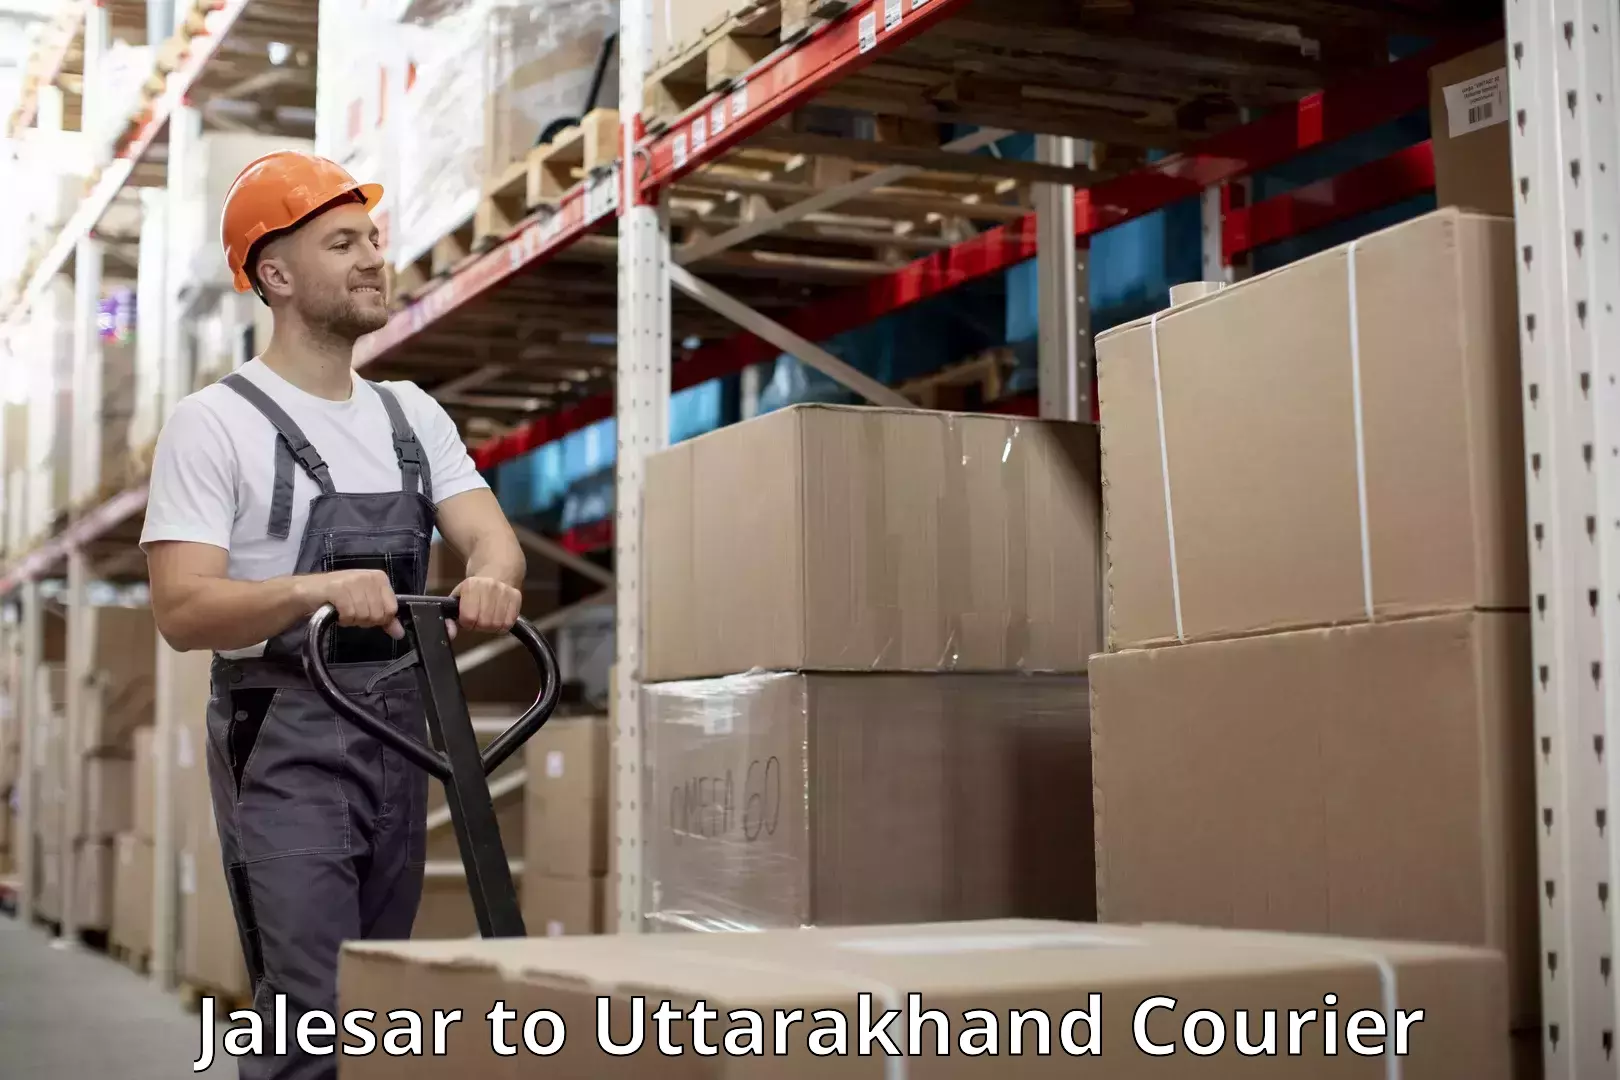 Luggage shipment processing Jalesar to Uttarakhand